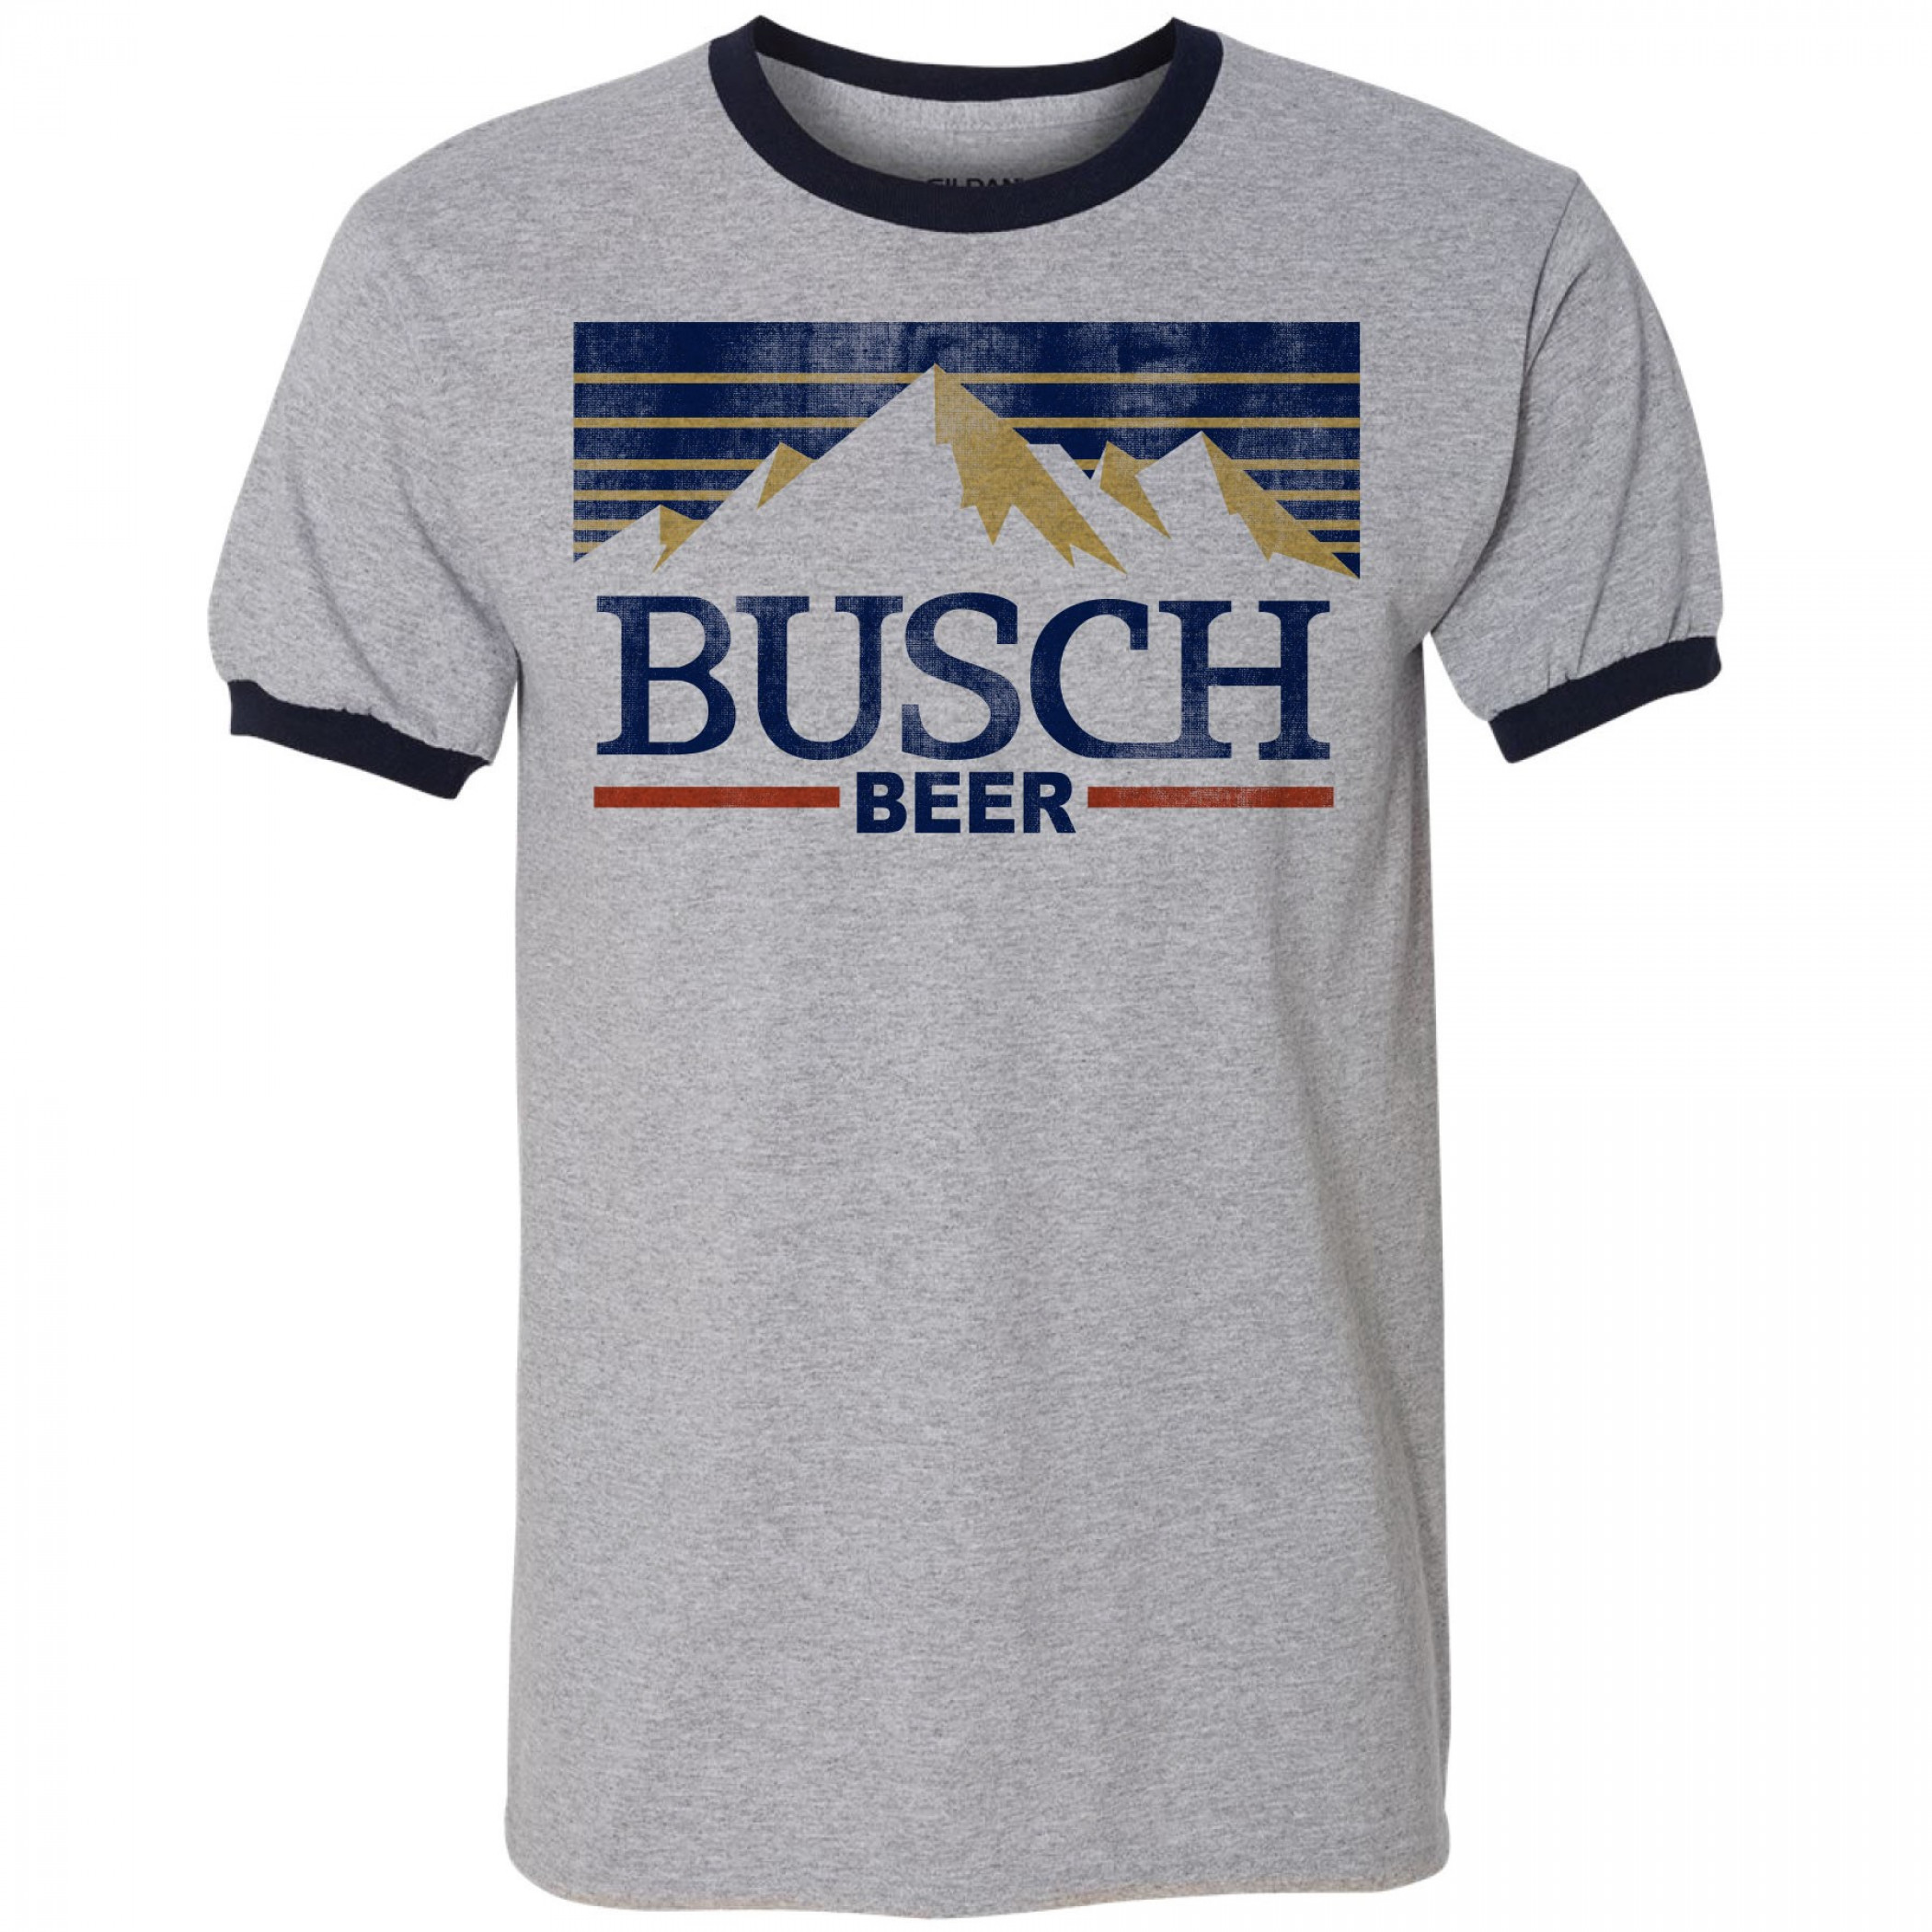 Busch Beer Vintage Distressed Label Ringer T-Shirt